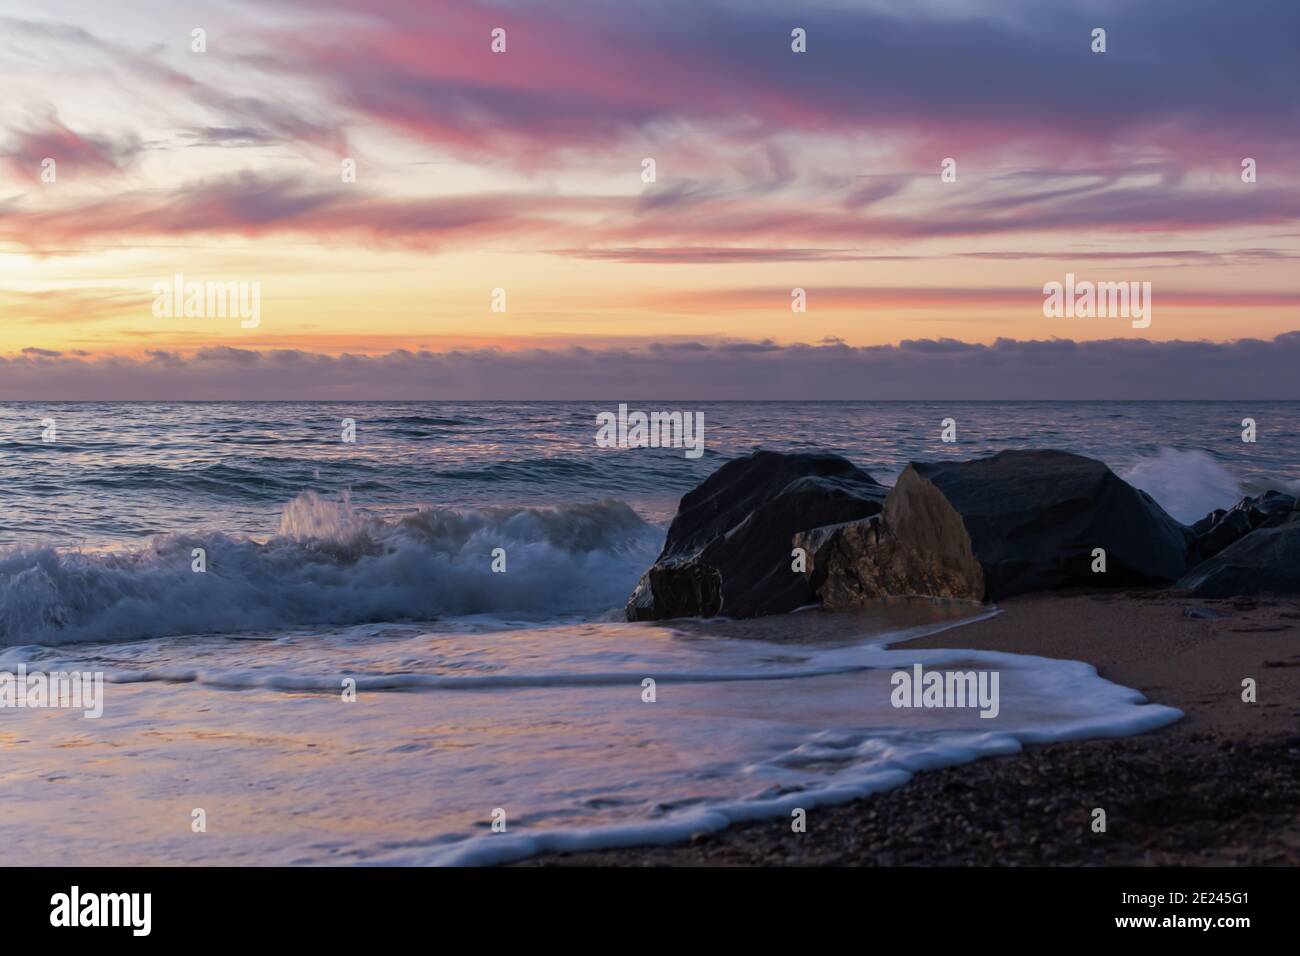 Lila Sonnenuntergang auf dem Meer. Helle stimmungsvolle Landschaft in violetten Farbtönen. Natürlicher Hintergrund in der Dämmerung. Das Konzept der Entspannung und Entspannung. Stockfoto